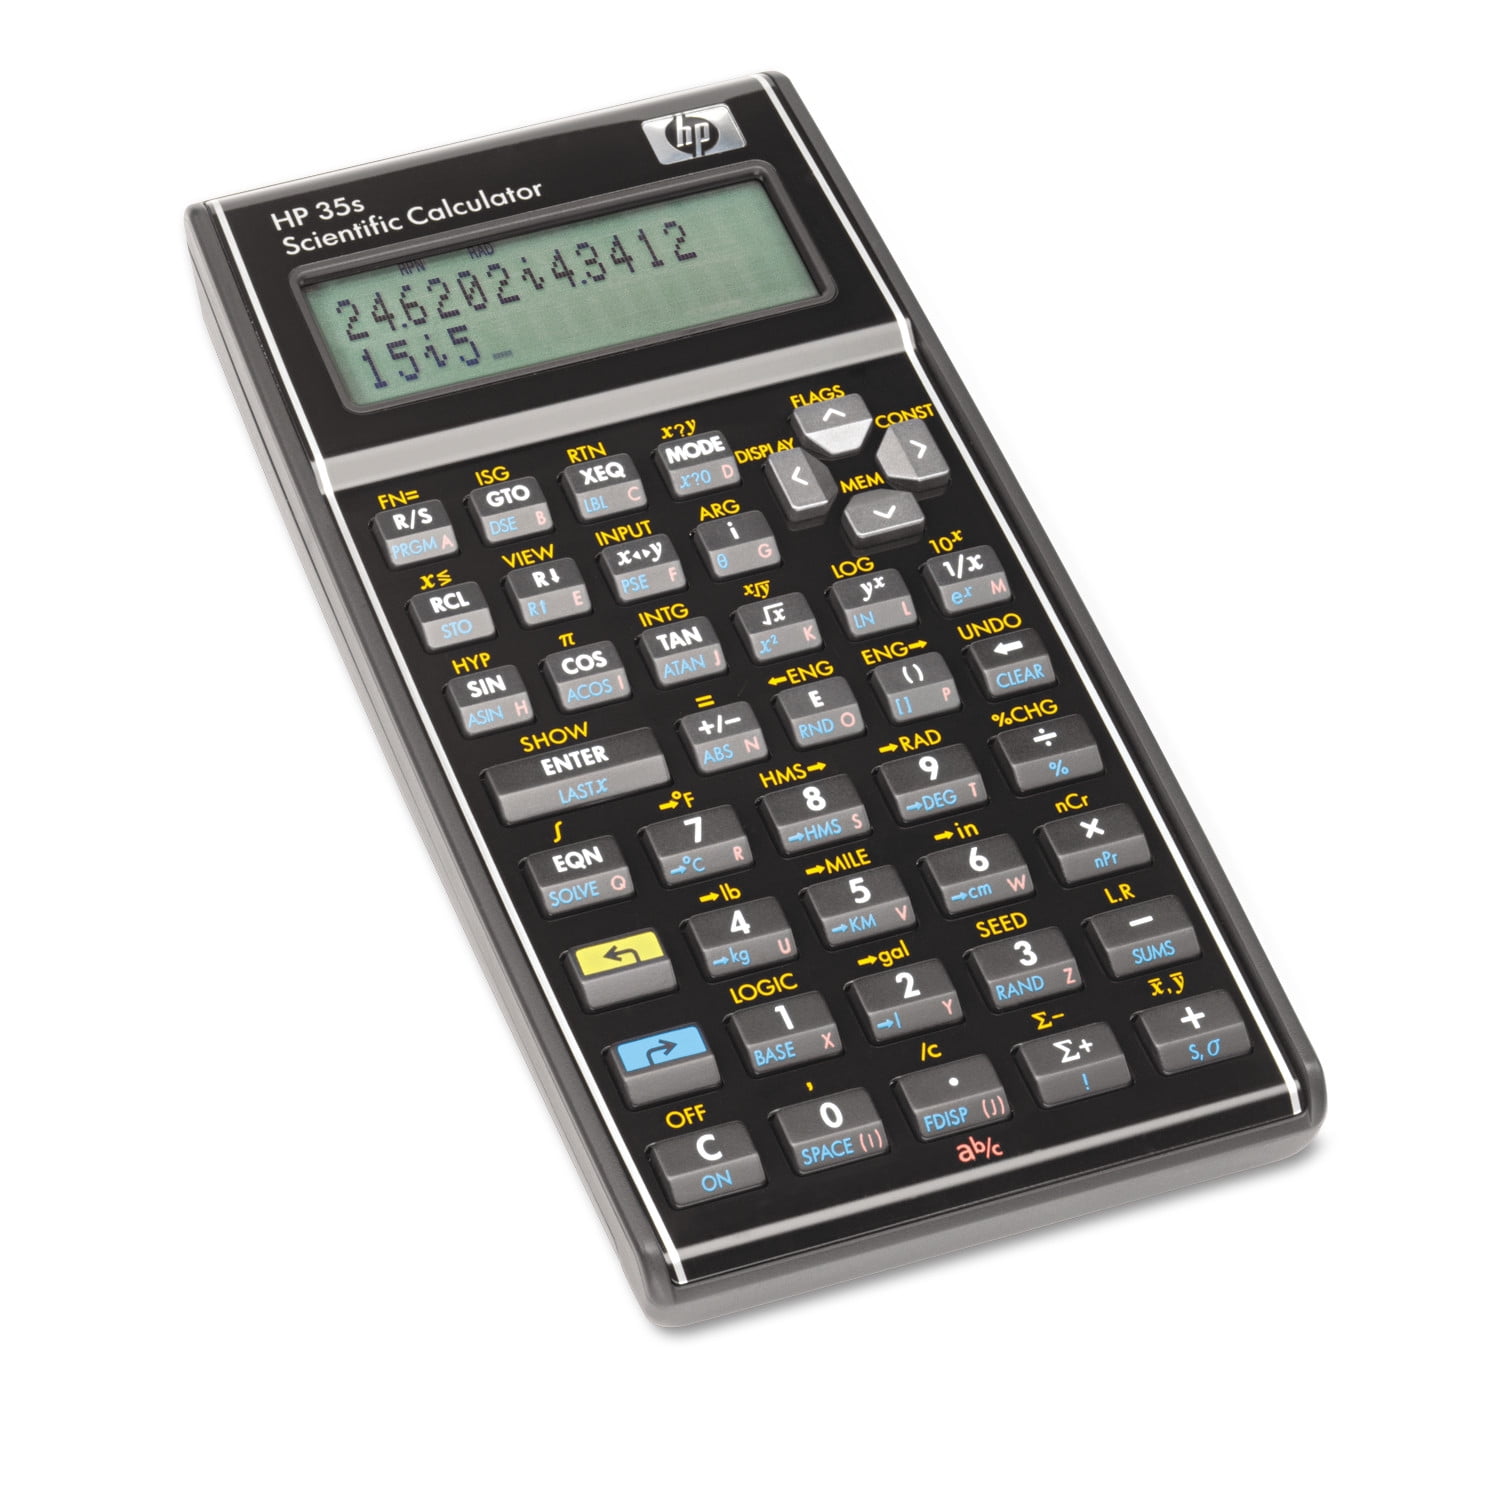 HP35S Level Cut & Fill Program for the HP 35S Scientific Calculator 